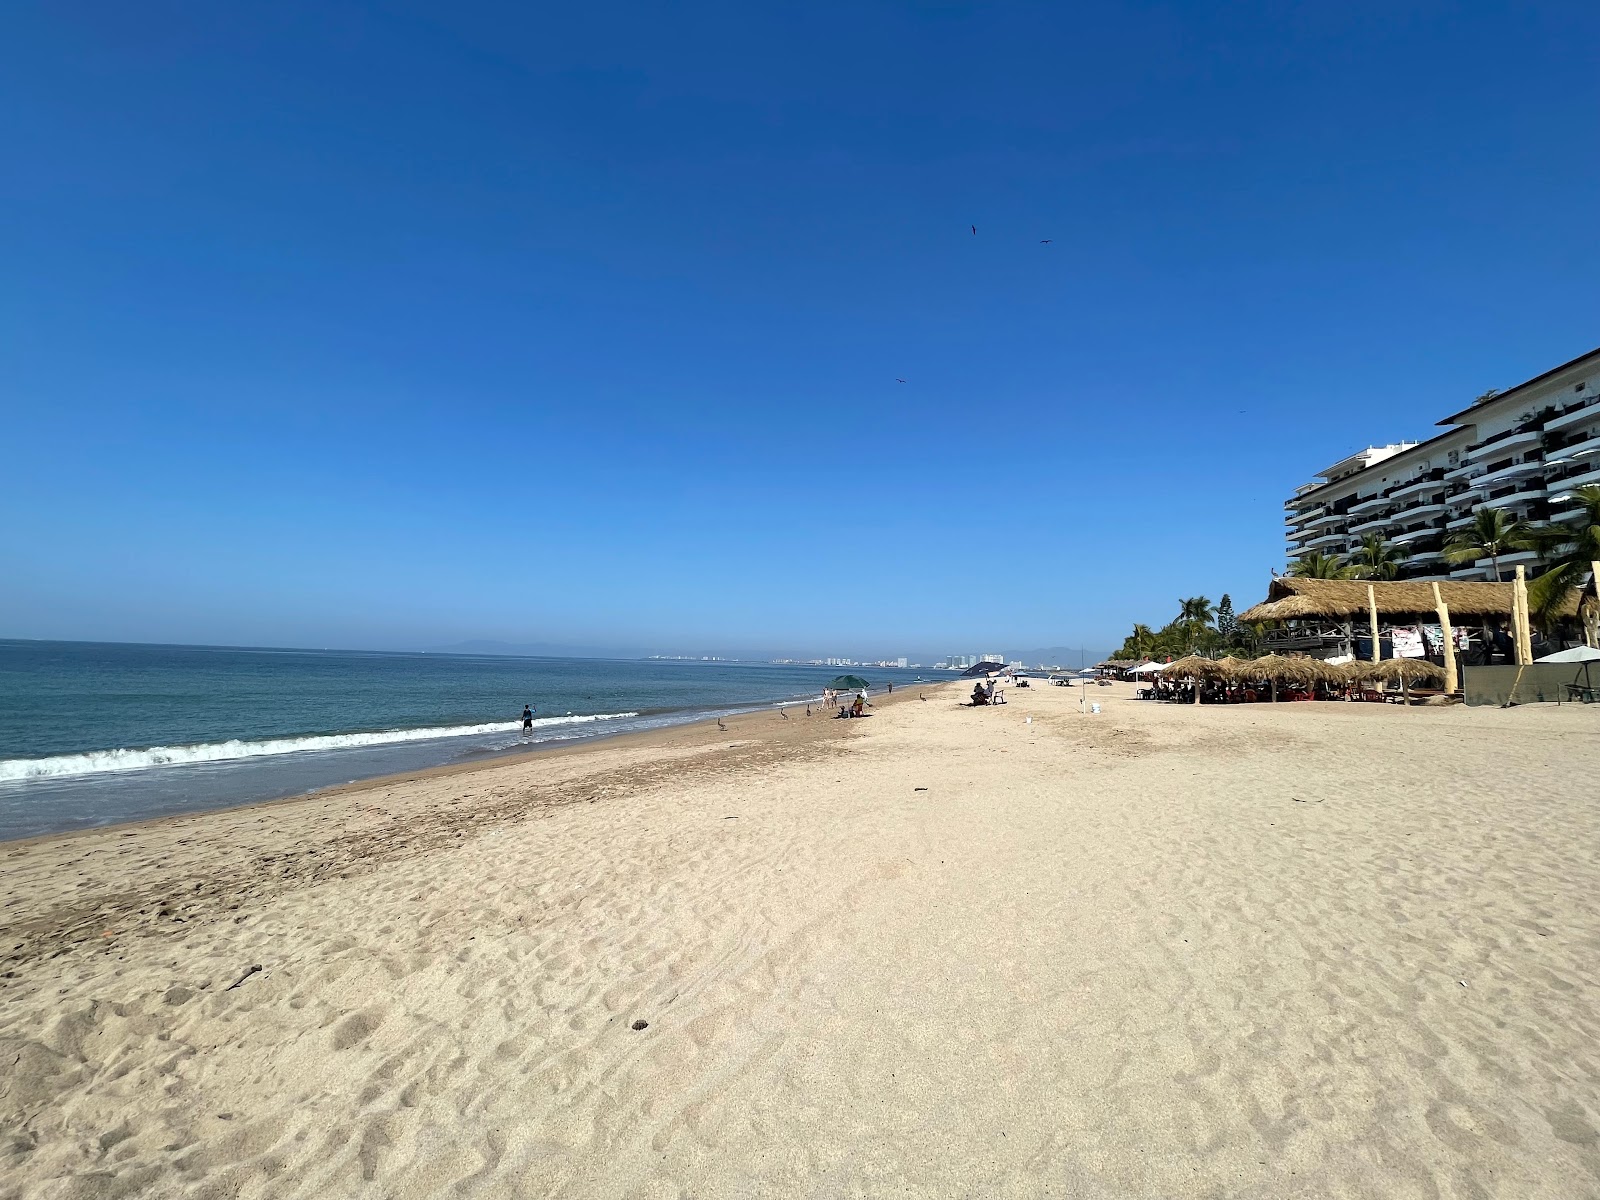 Olas Altas beach'in fotoğrafı geniş plaj ile birlikte